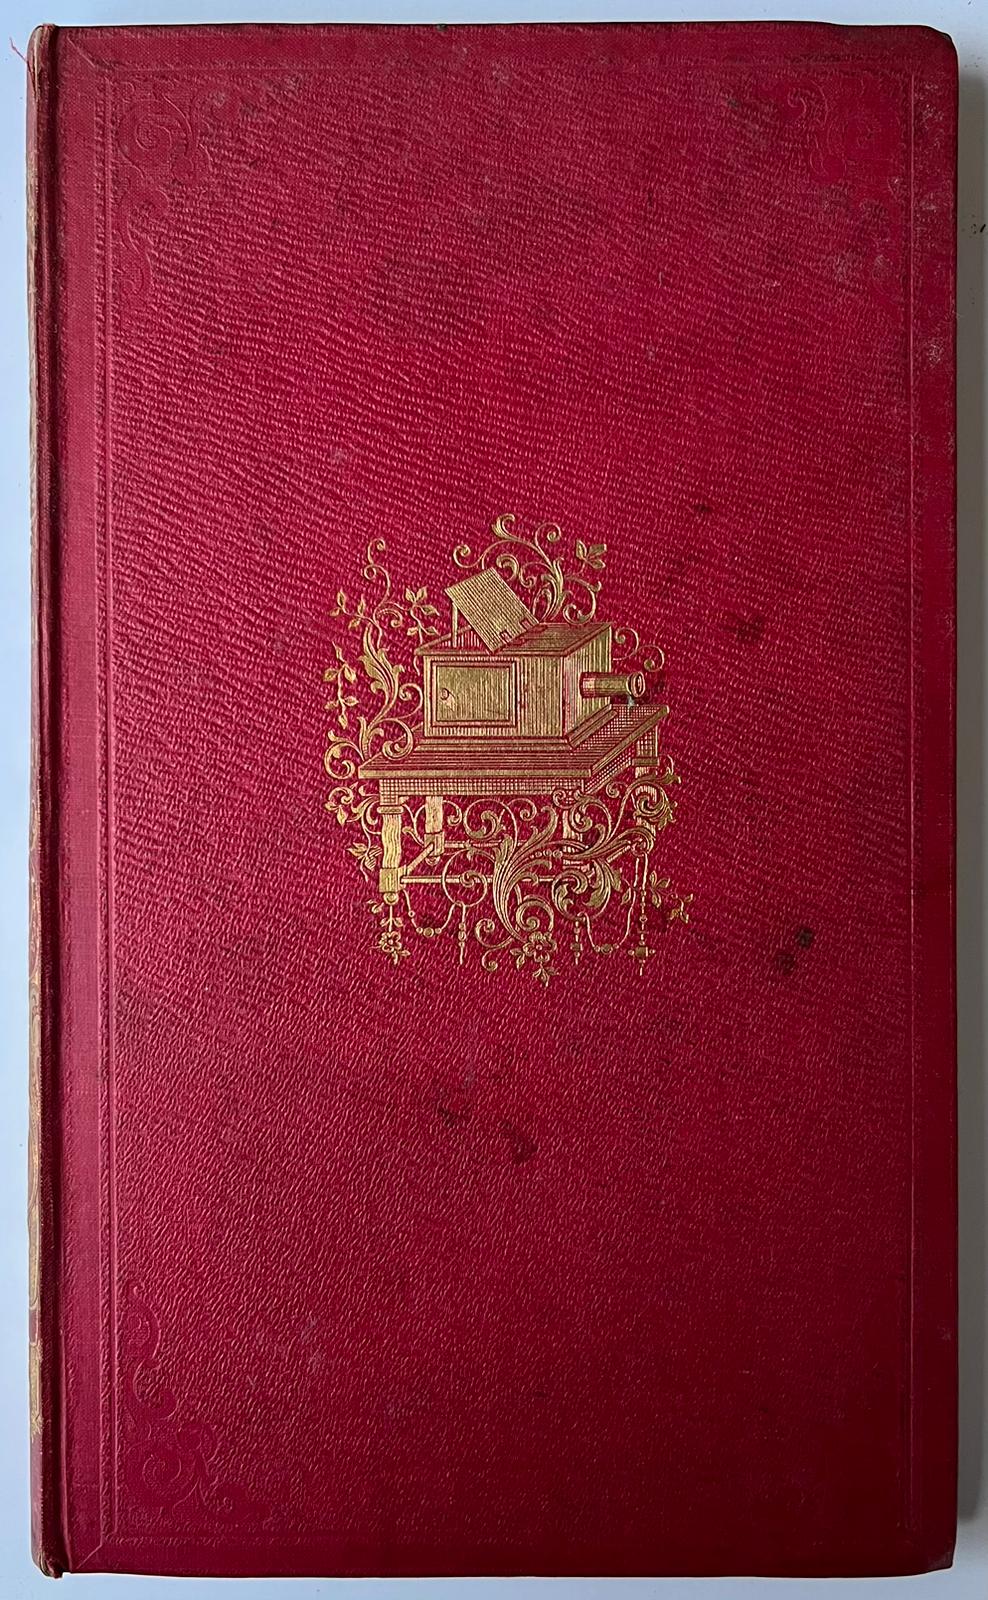 [Literature 1840] Proza en poezy. Verzameling van verspreide opstellen en verzen. Haarlem, Erven F. Bohn, [1840], [6] 170 [2] pp.